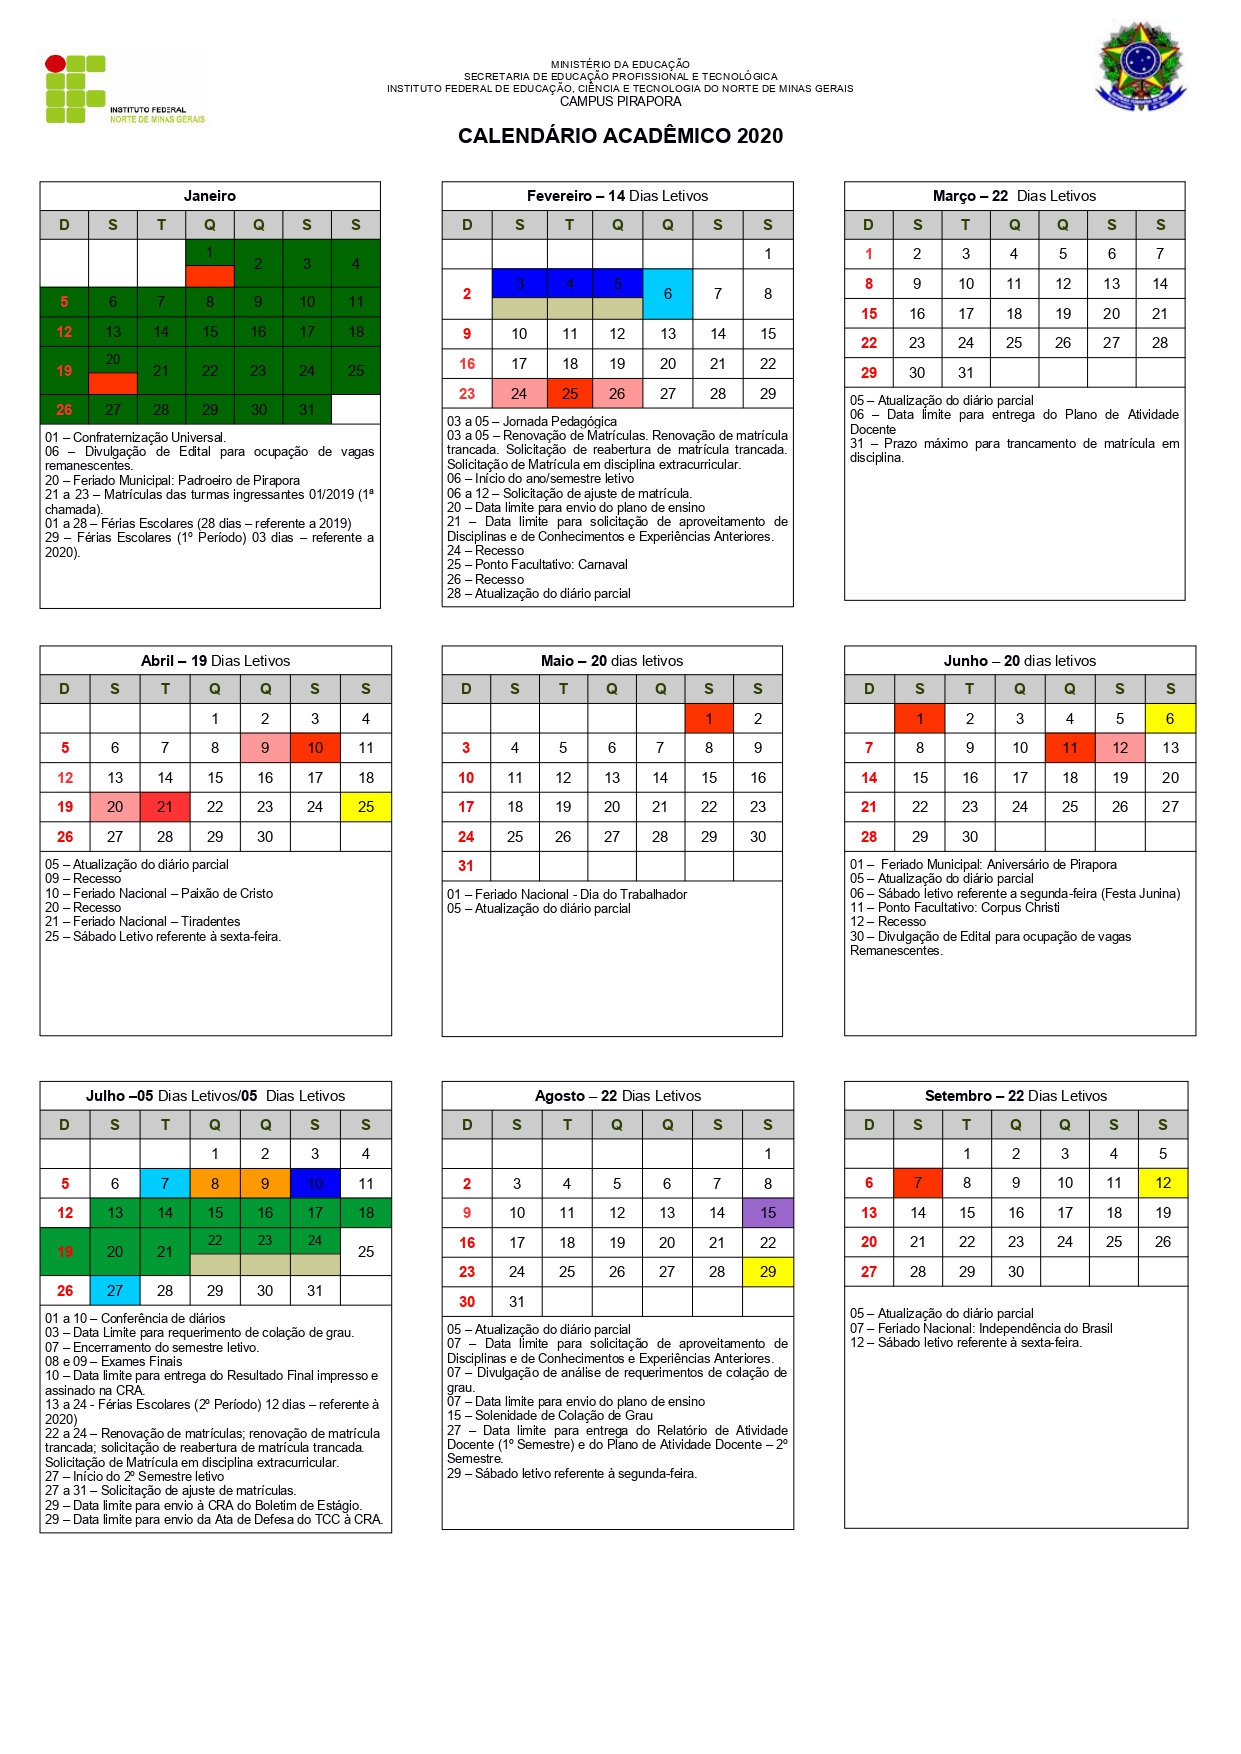 2020 Calendario Academico. Versao FINAL 1 page 0001